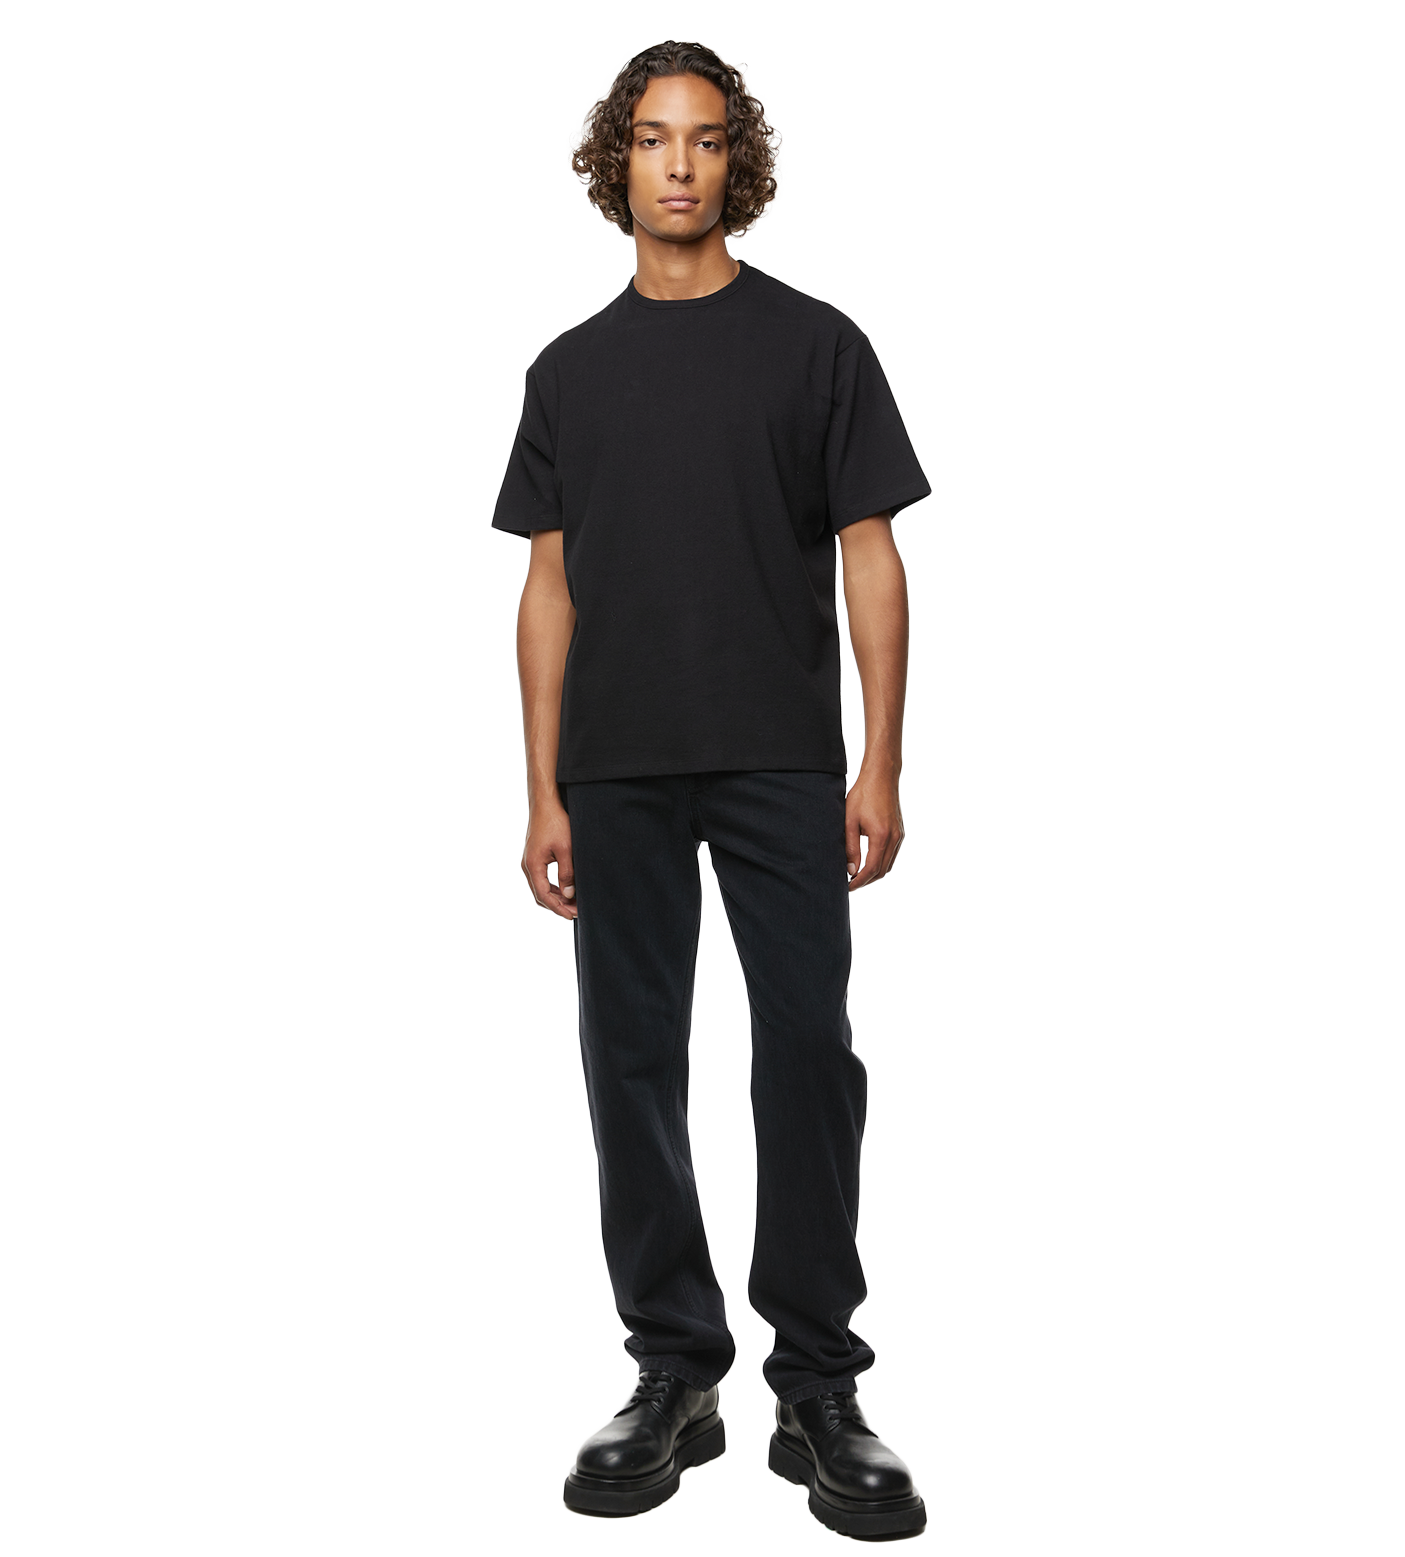 Steven Jersey T-shirt Black